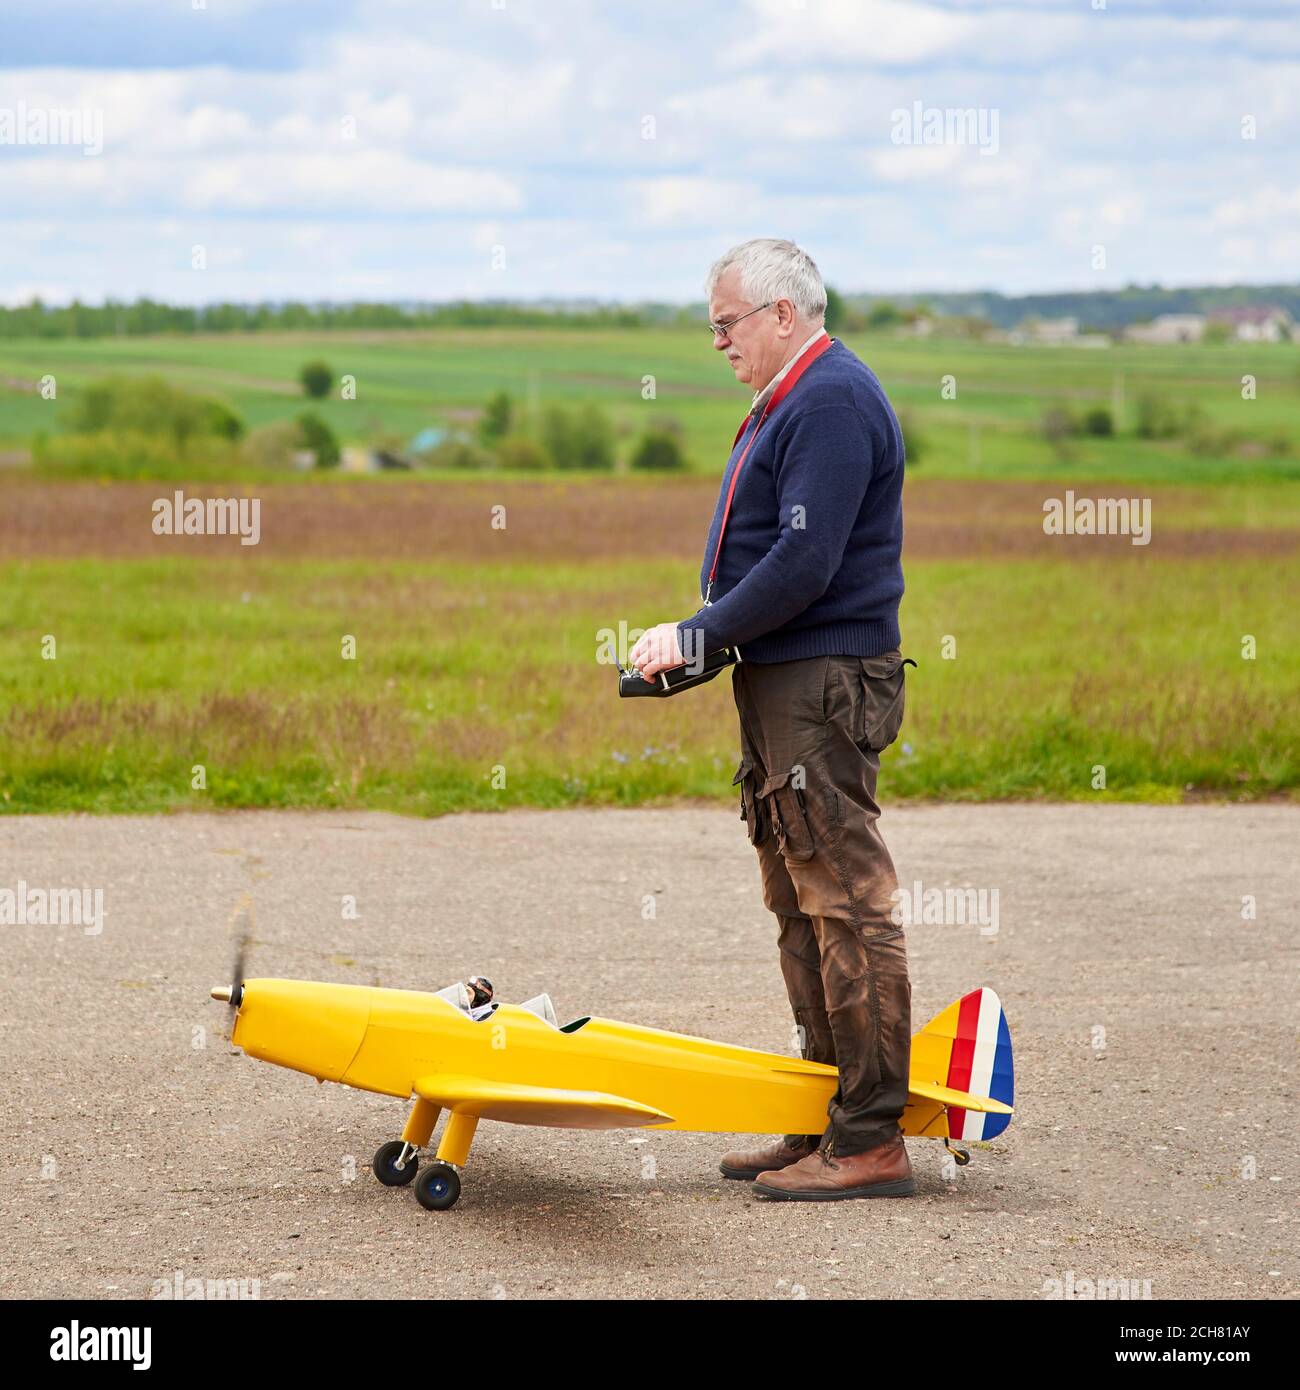 Un uomo anziano lancia un aereo radiocontrollato sulla pista in primavera. Foto Stock